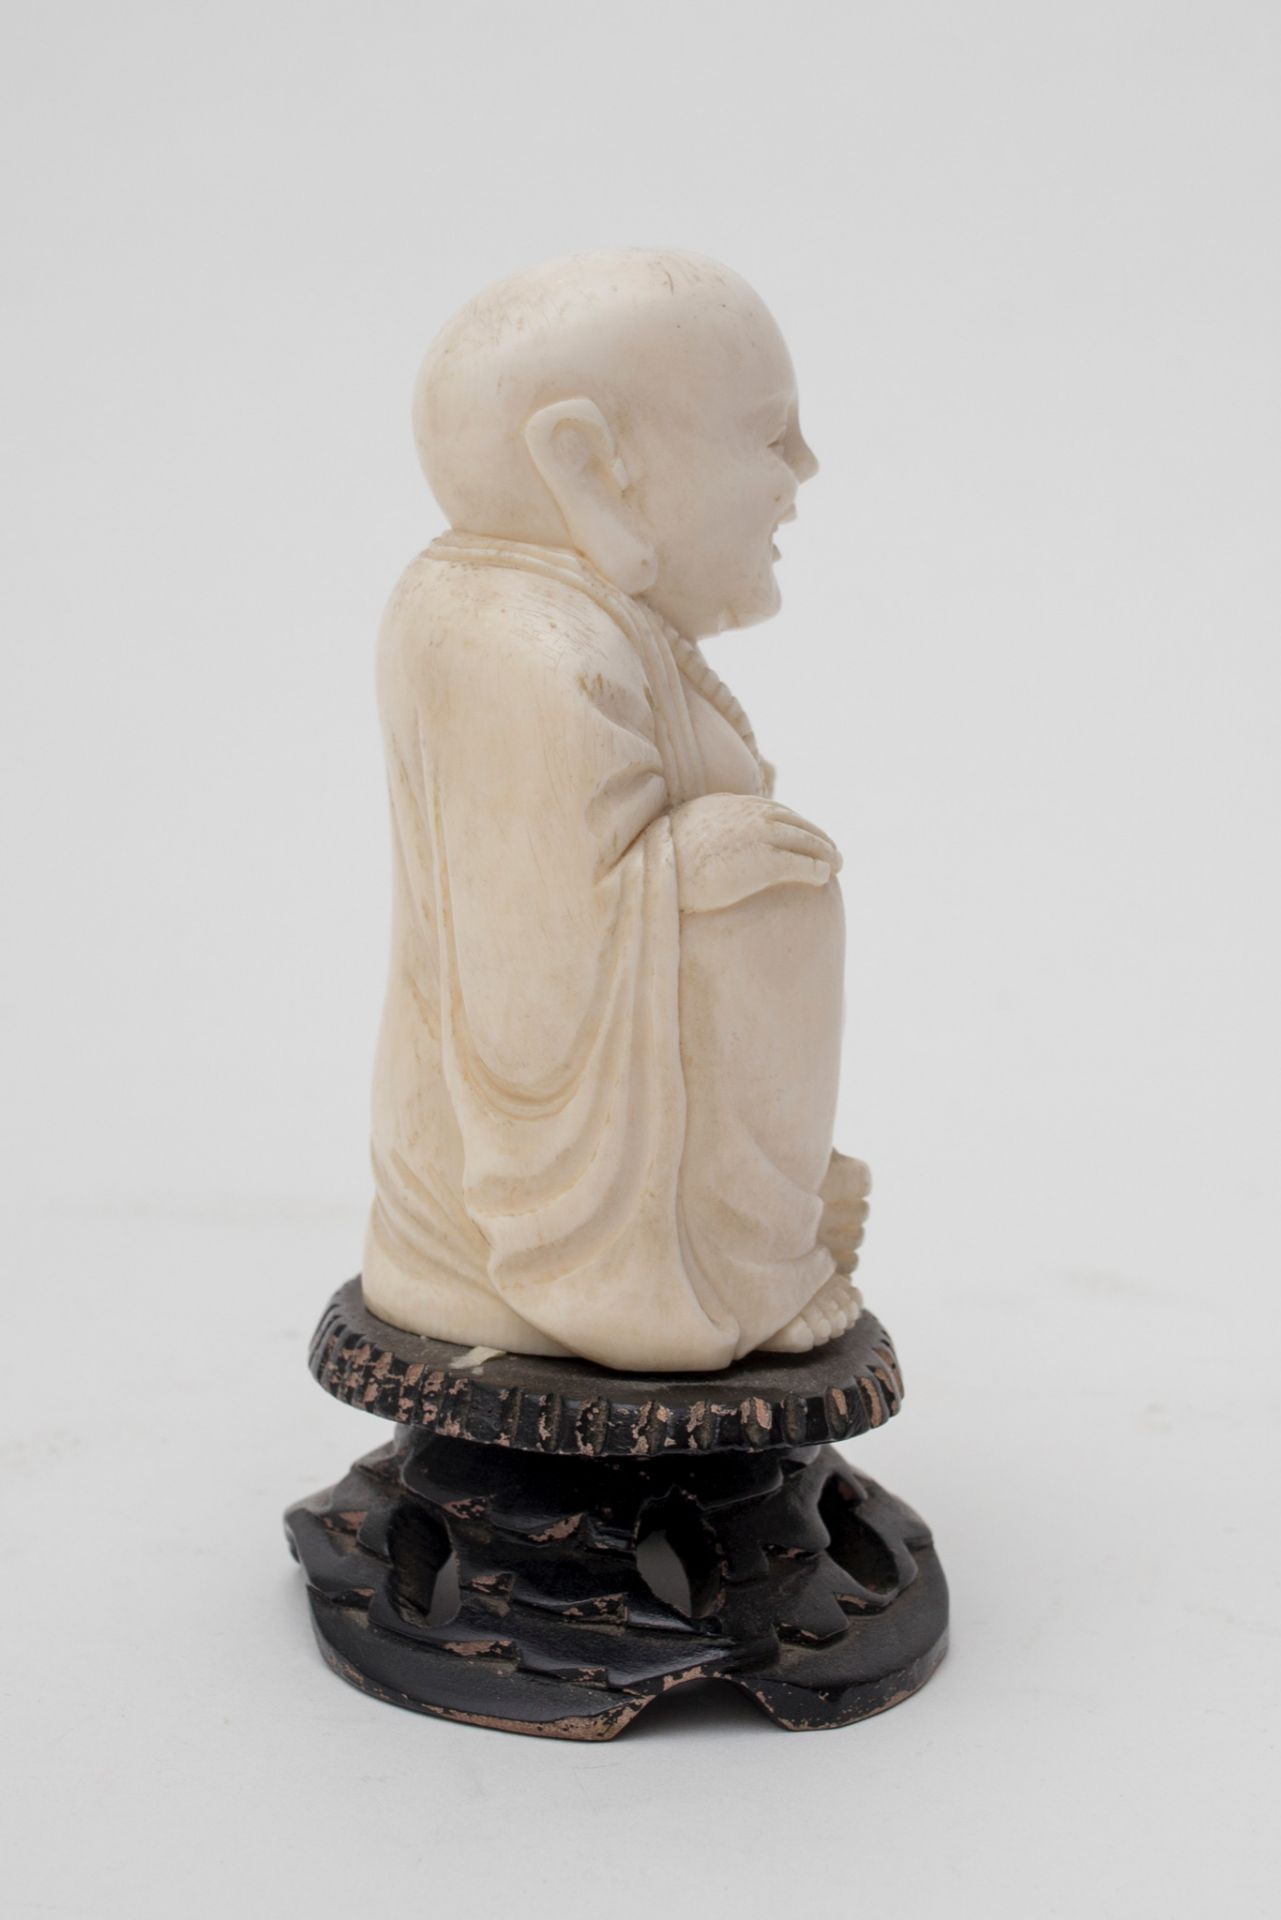 Chine - Budaï d'ivoire - Fixé sur socle de bois. Fin XIXe - début XXe. - H 14 [...] - Image 3 of 8